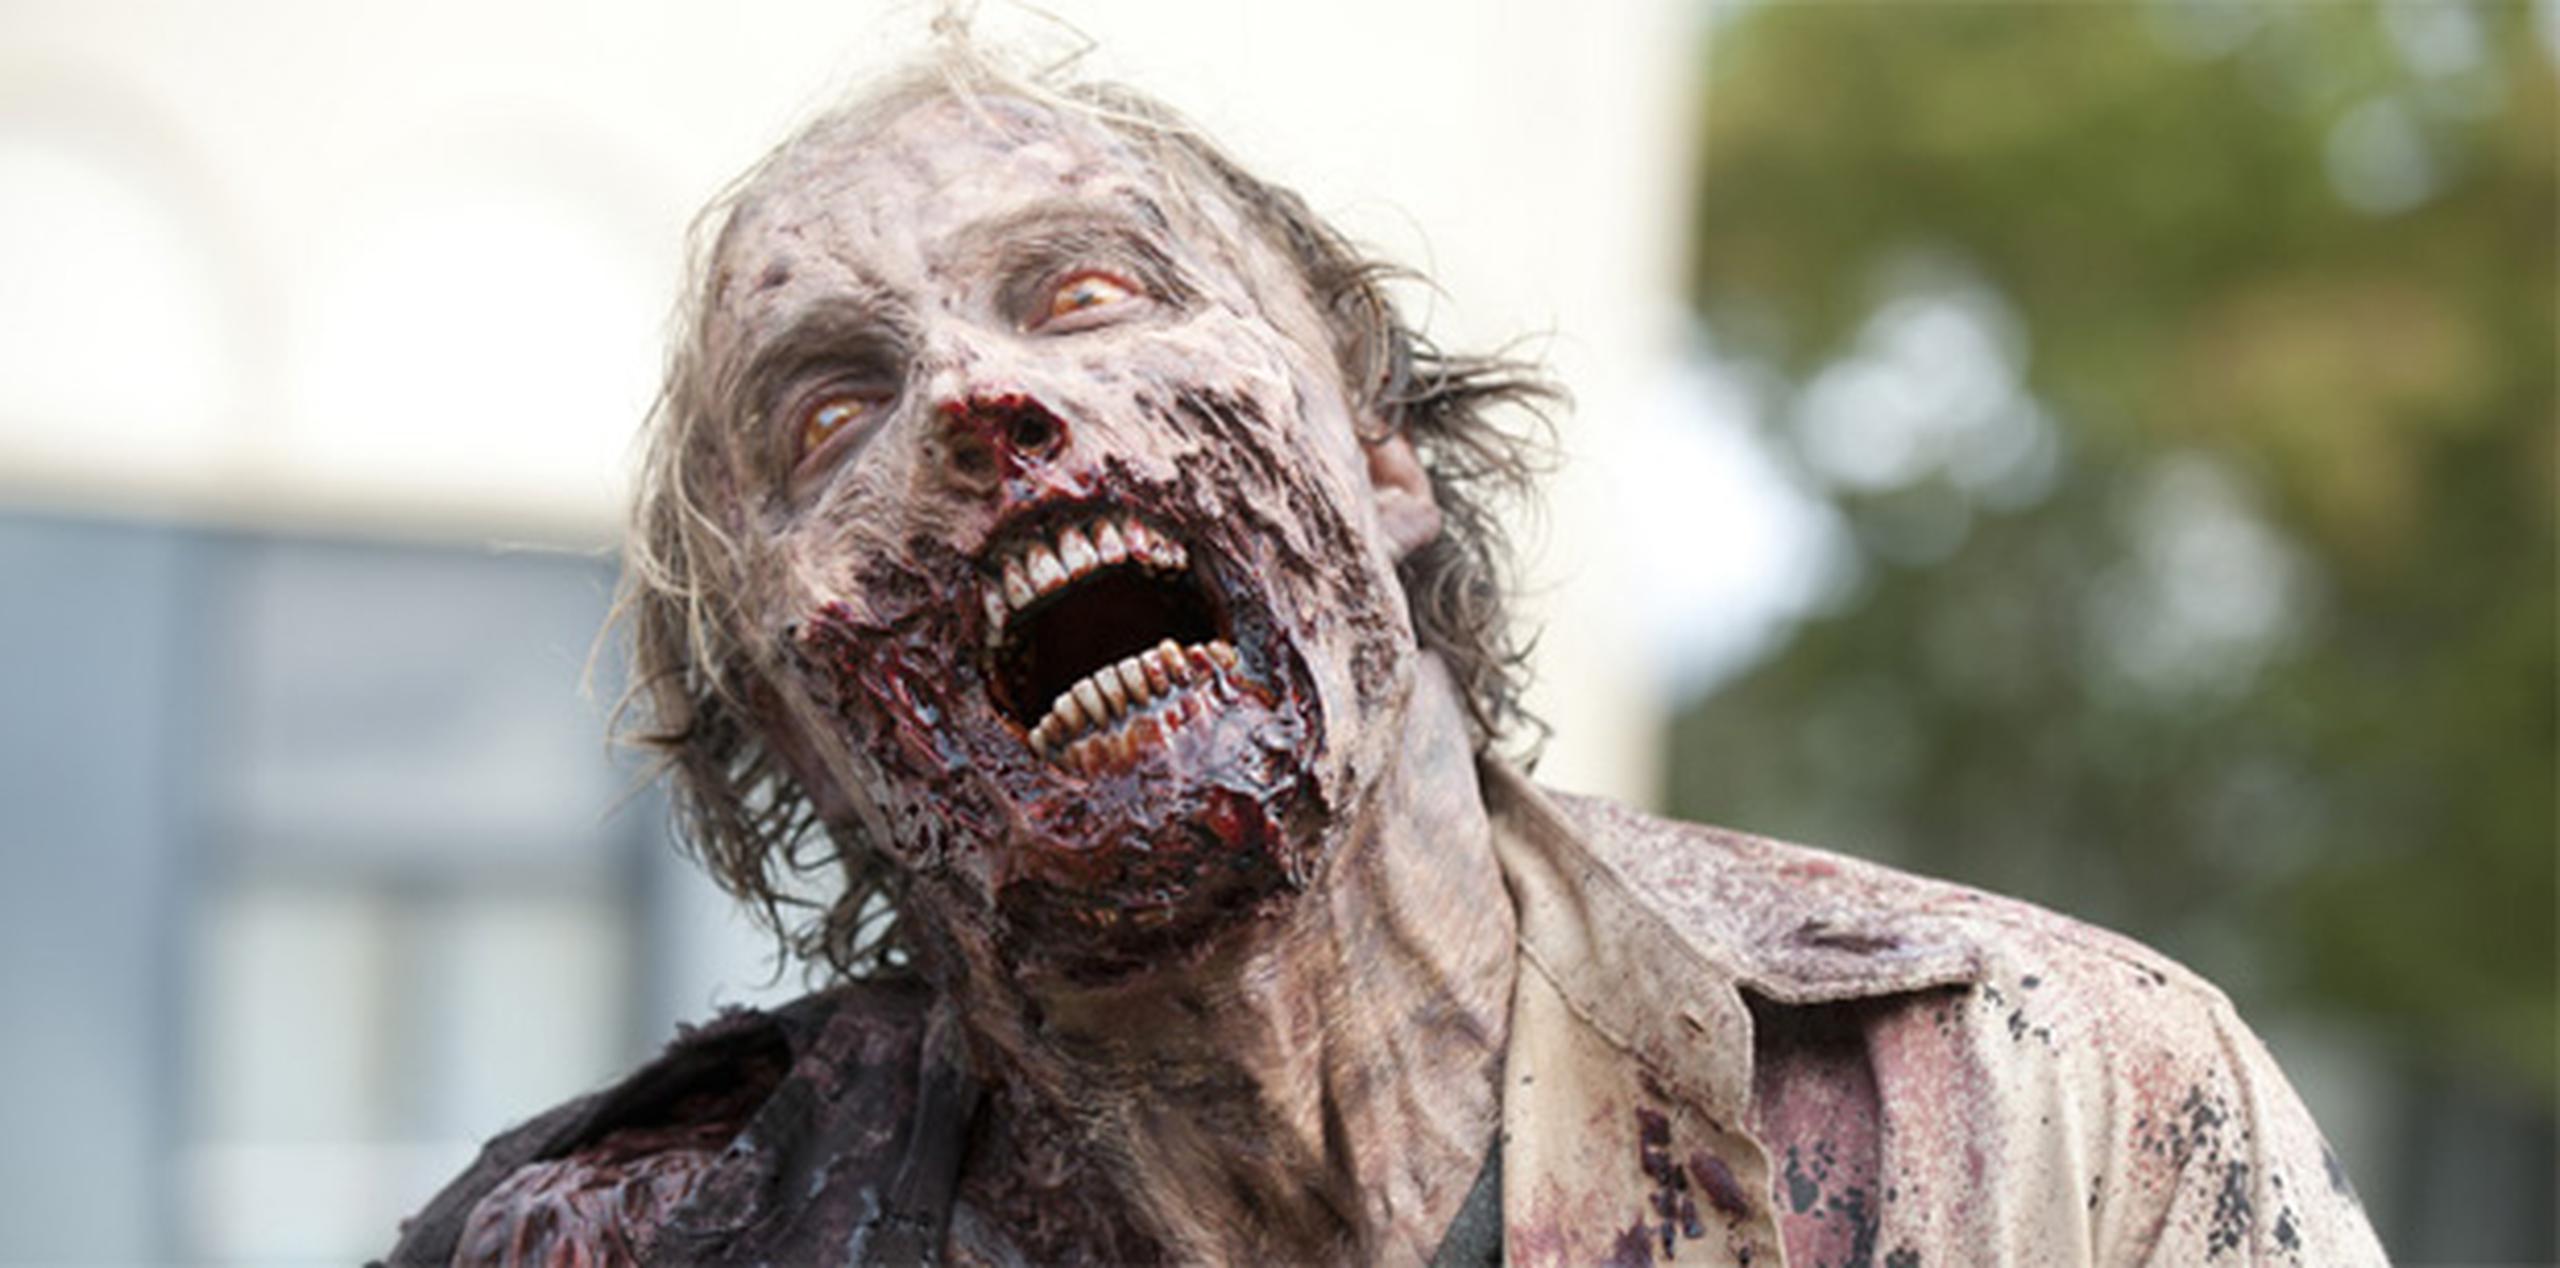 El sujeto tribuyó sus acciones al hecho de que vio varios capítulos seguidos de "The Walking Dead", una serie de zombis de AMC.